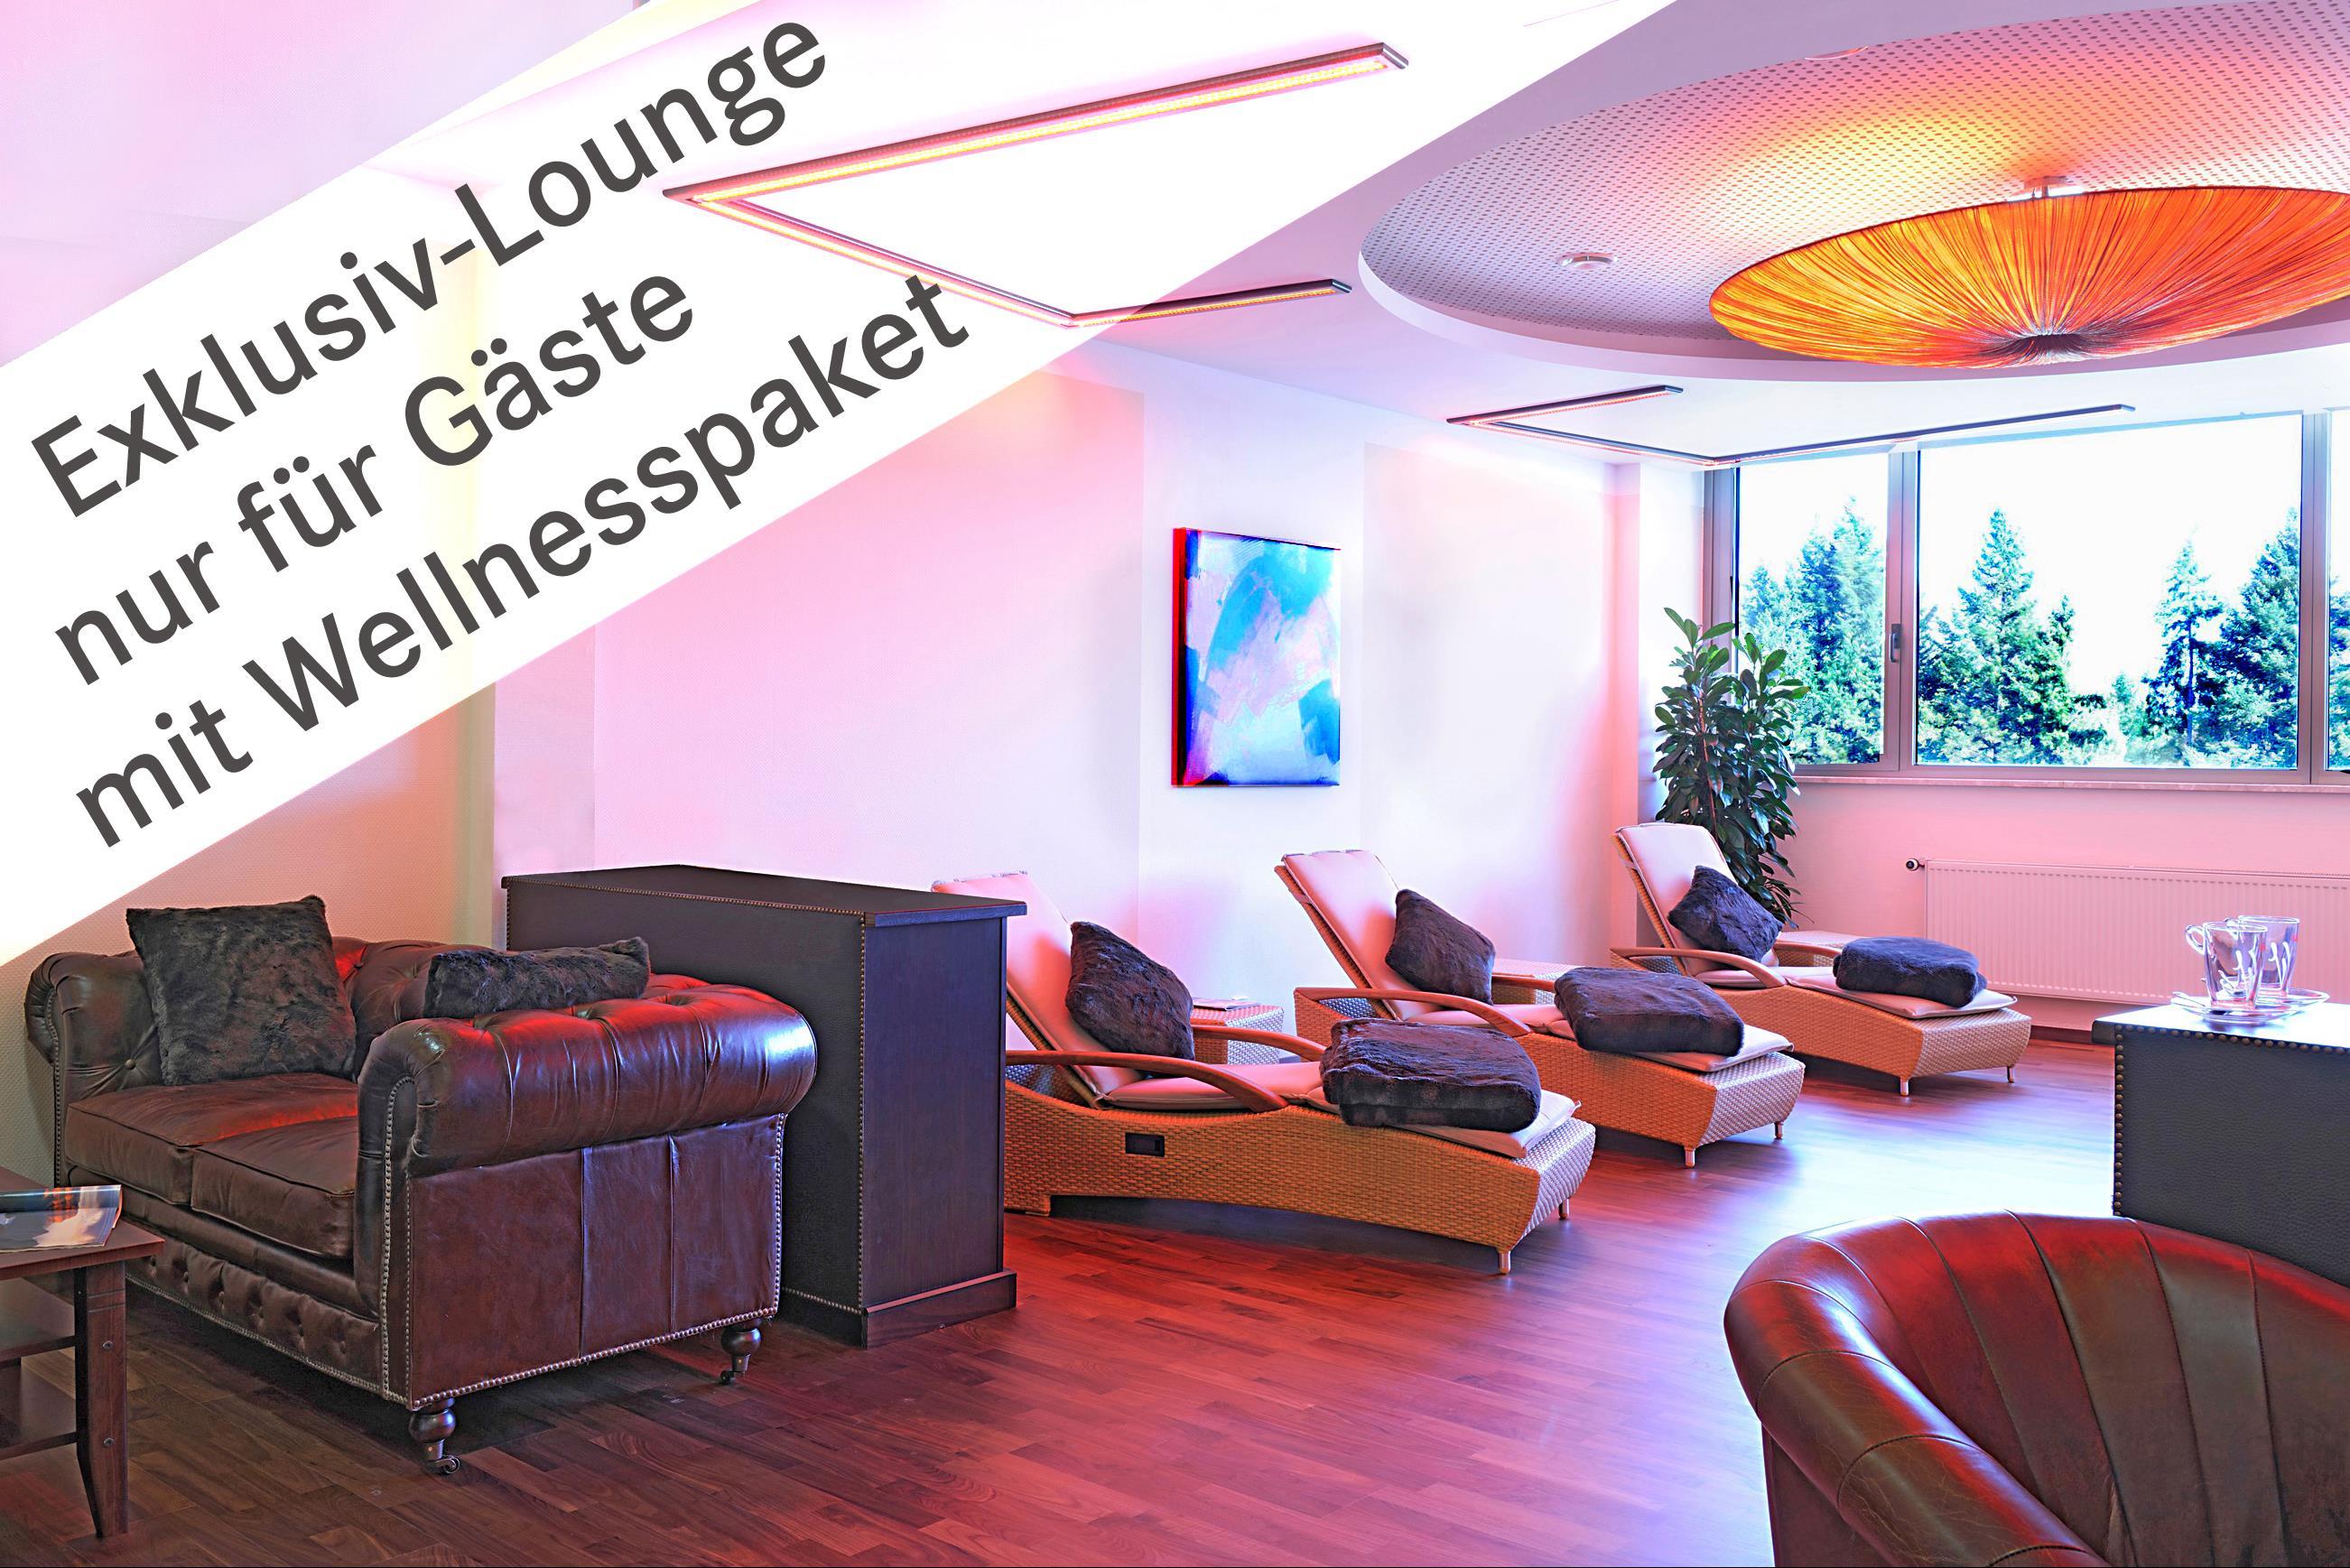 Buchen Sie ein Wellnesspaket und entspannen Sie in unserer Exklusiv-Lounge